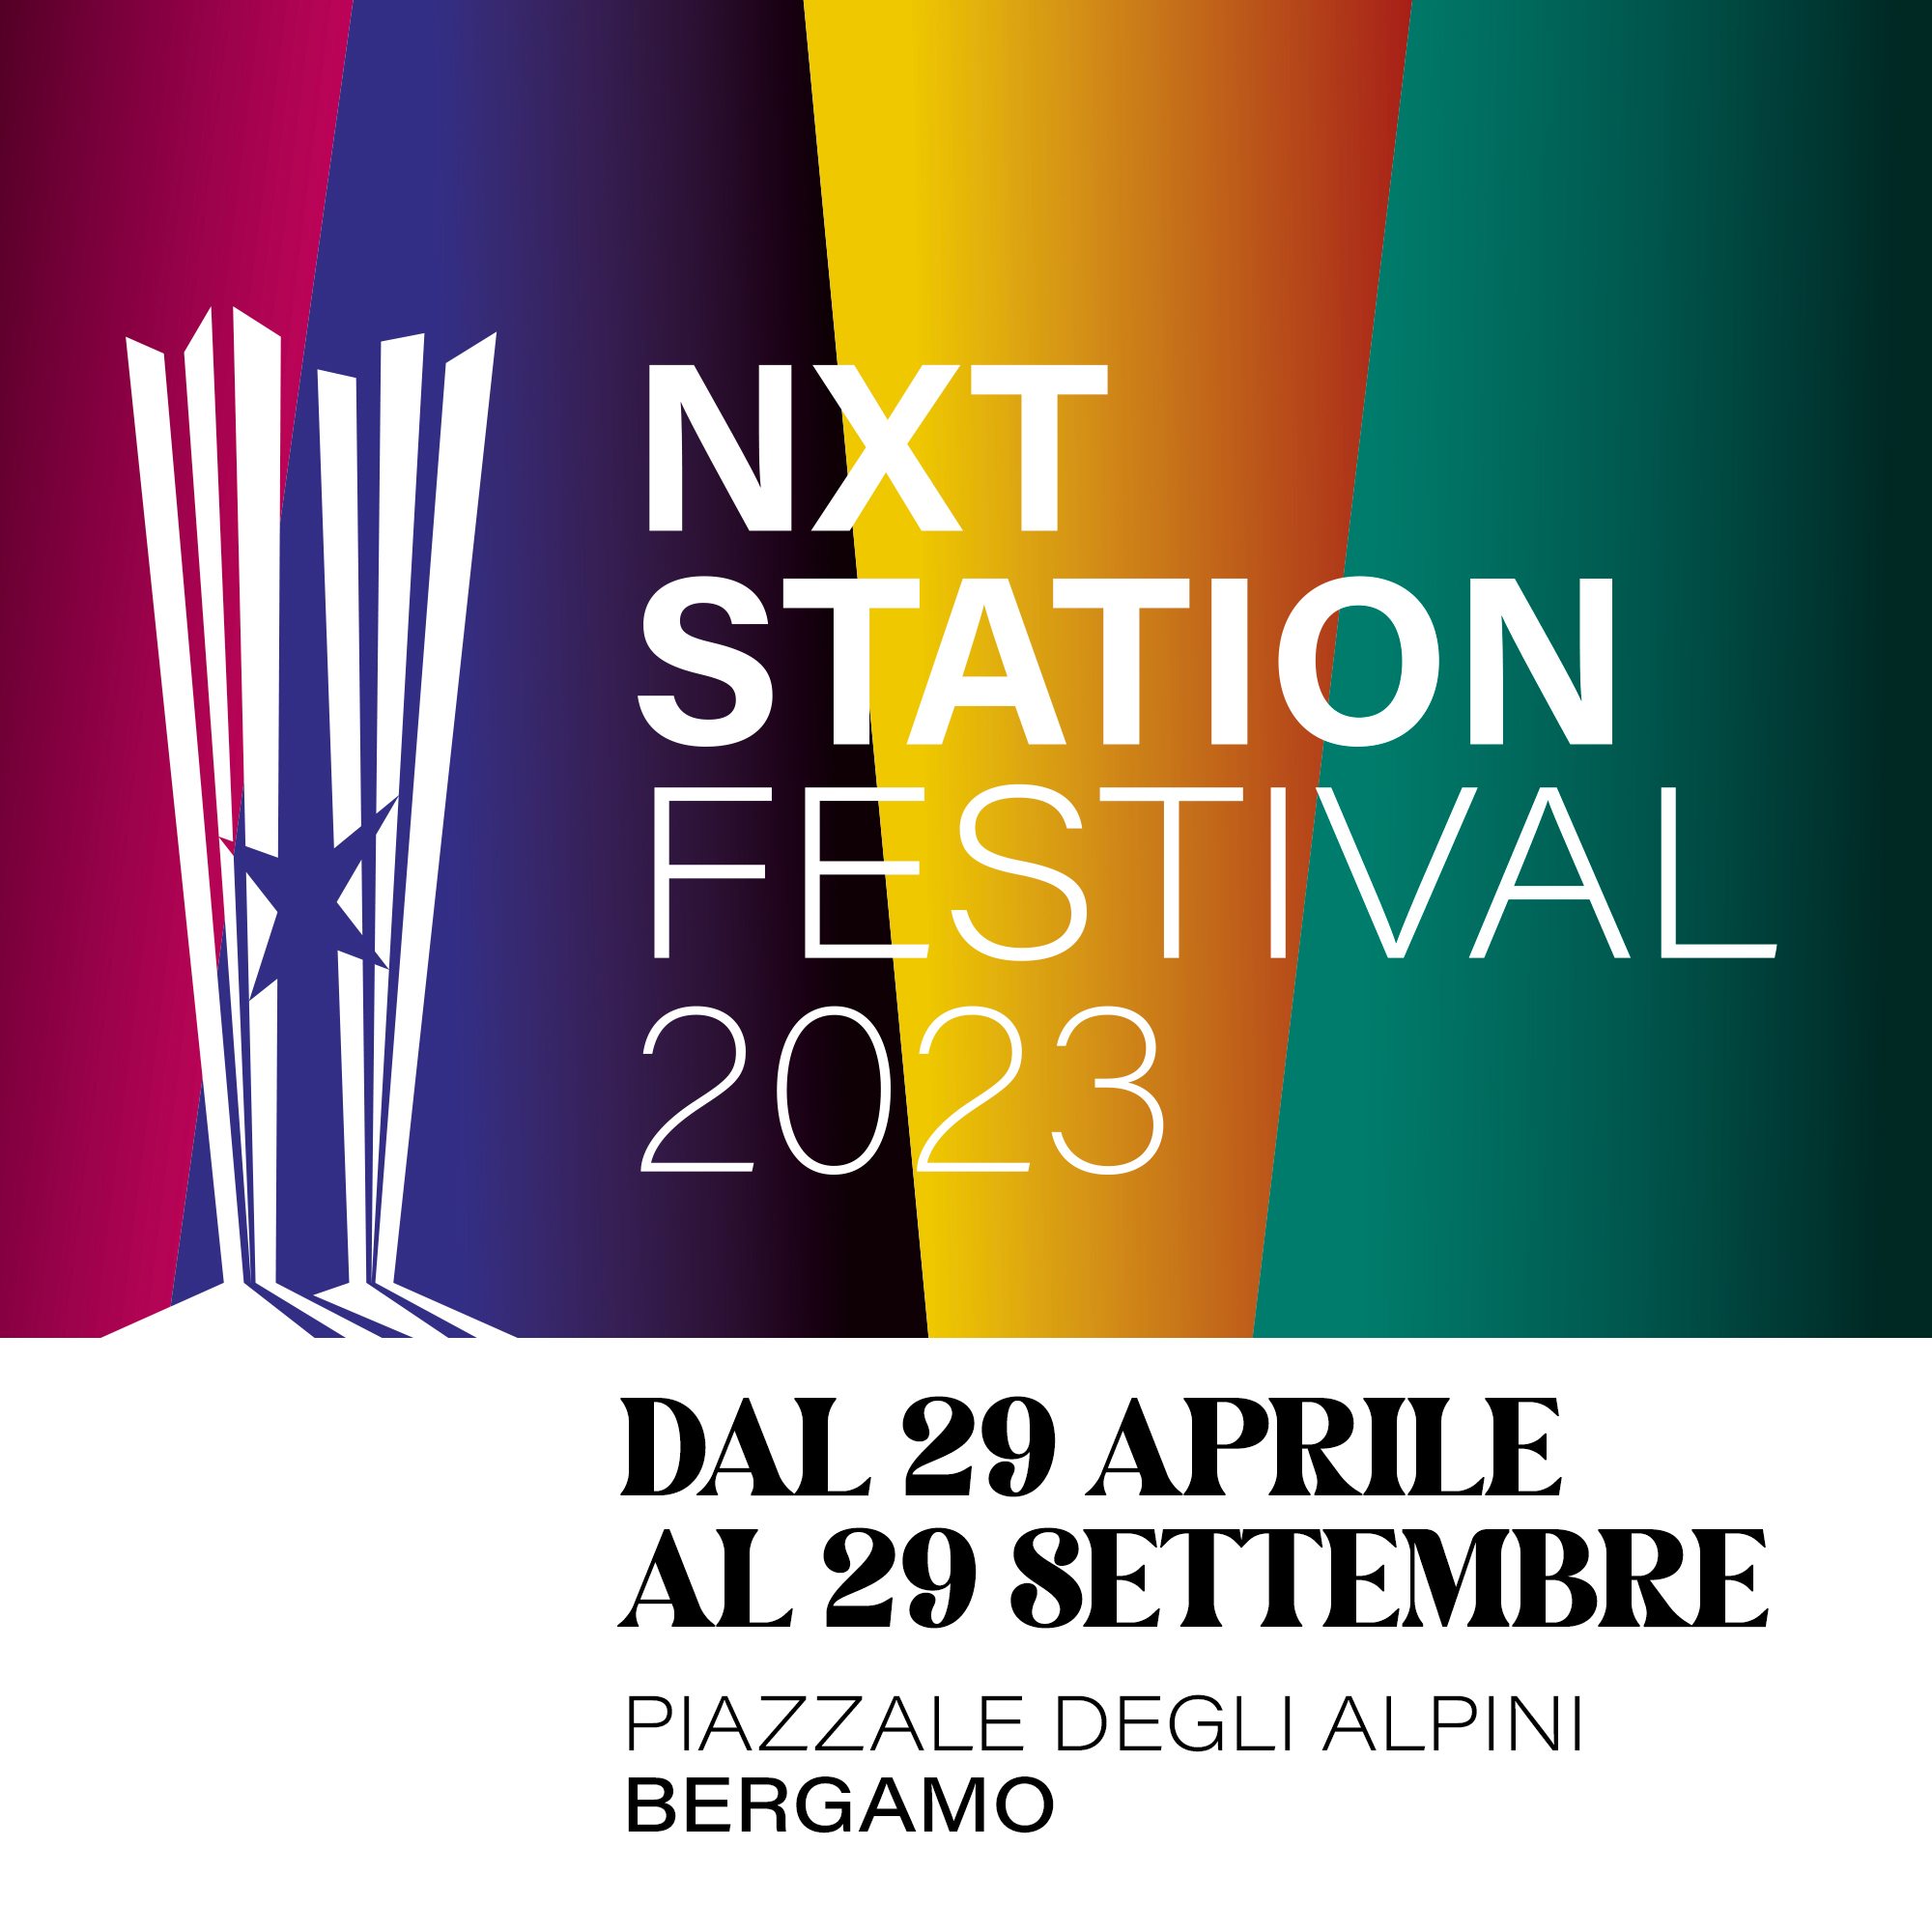 NXT STATION FESTIVAL 2023 – Al via dal 29 aprile la nuova stagione del generatore di cultura di Bergamo